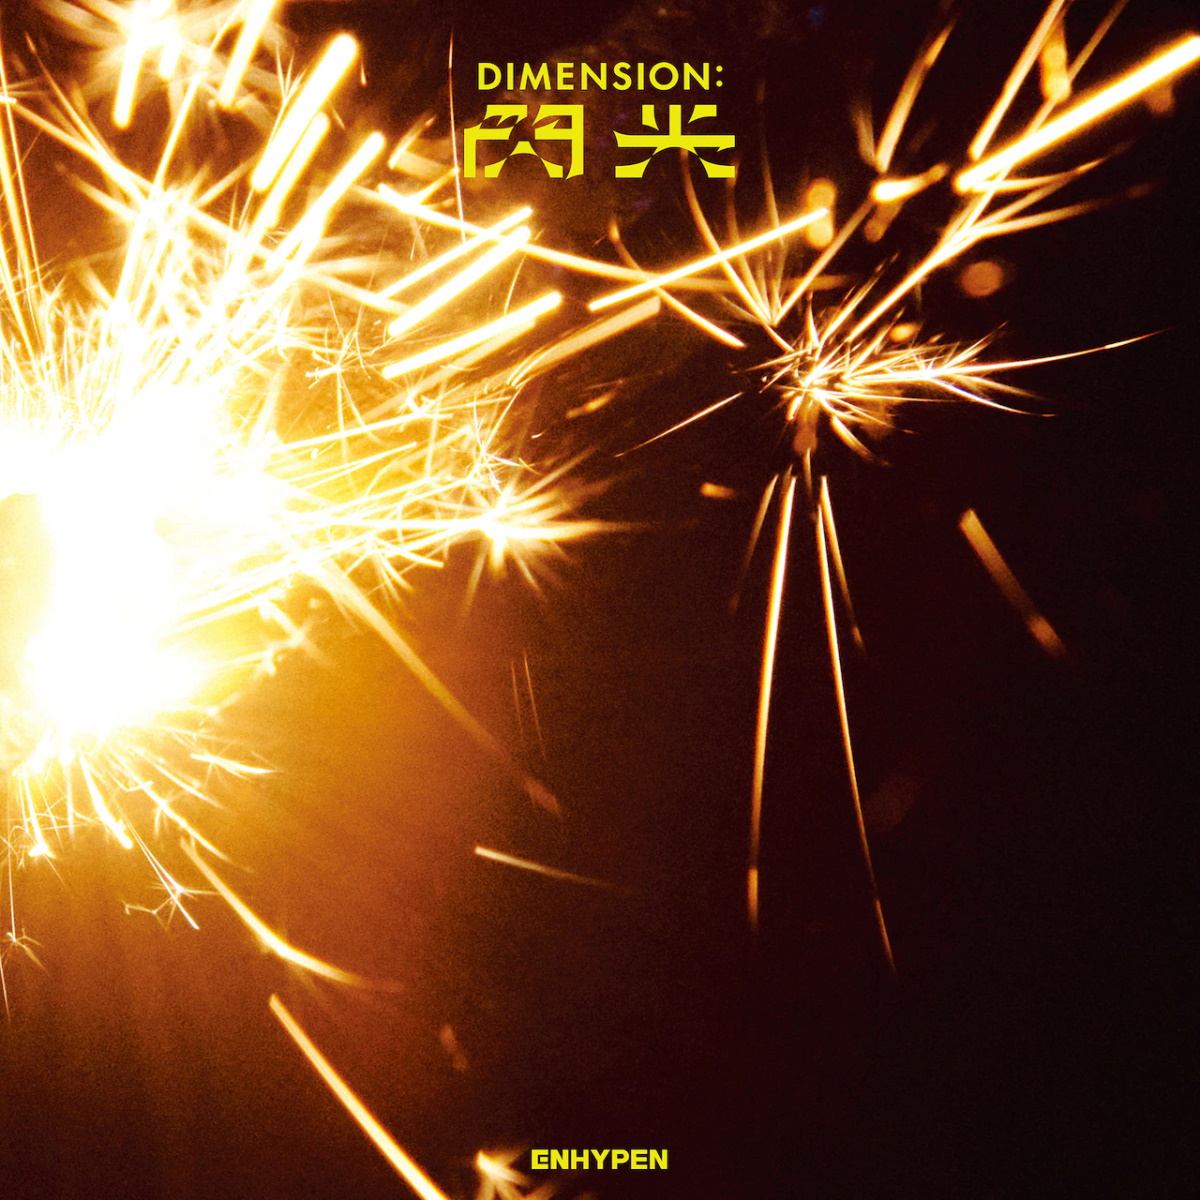 Cover art for『ENHYPEN - Drunk-Dazed [Japanese Ver.]』from the release『DIMENSION : Senkou